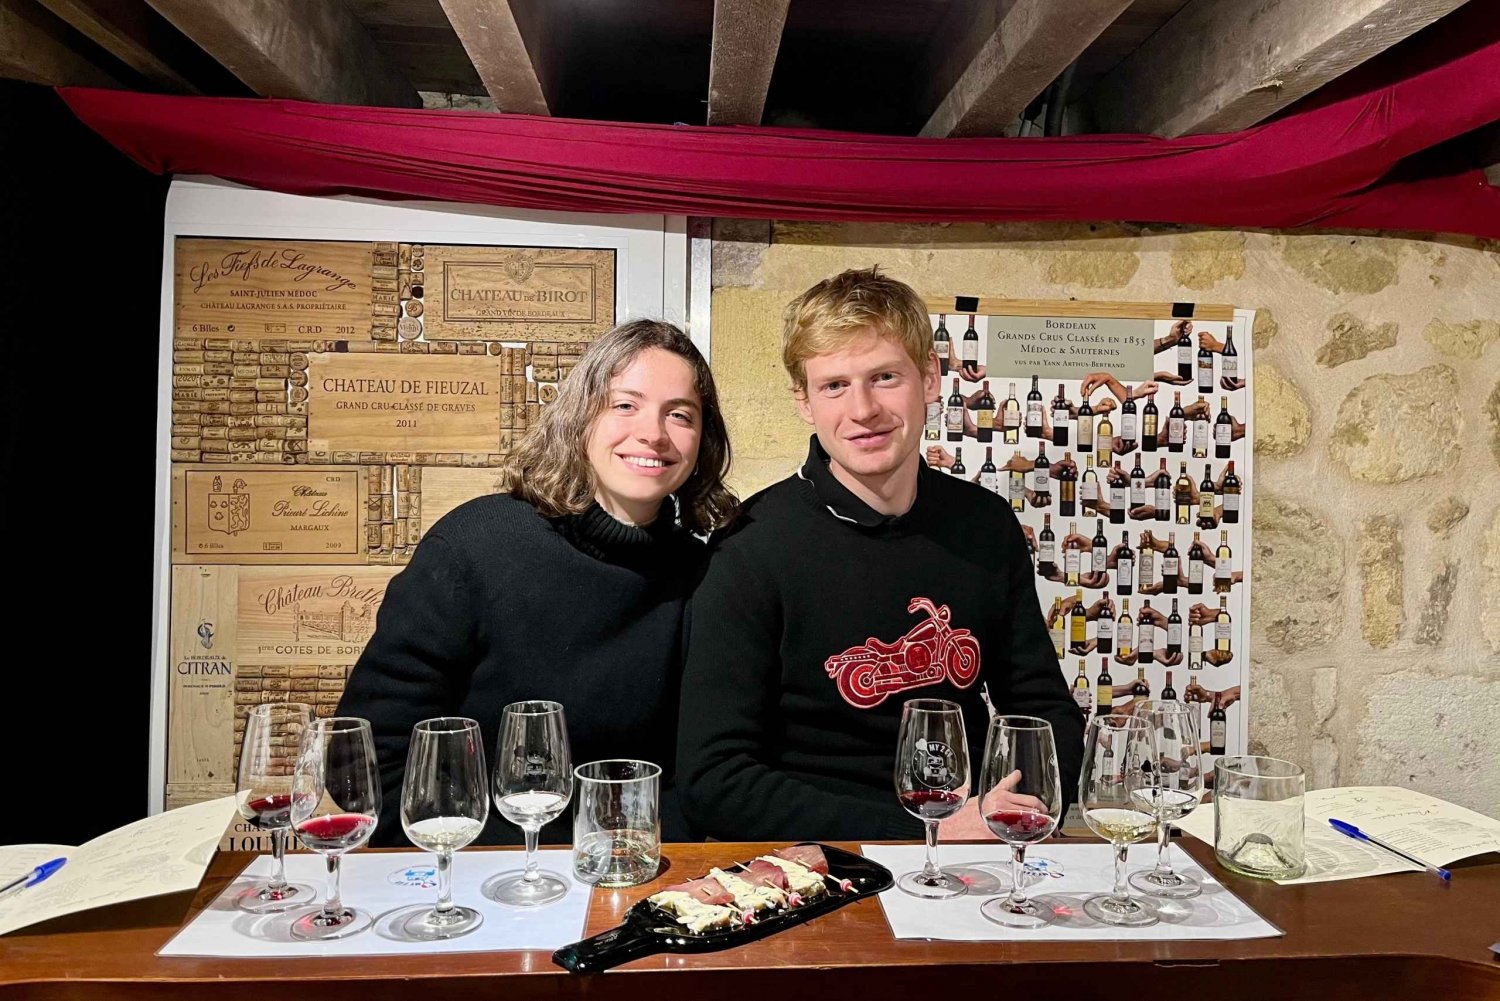 Bordeaux-viner: smakingskurs med 4 viner og matservering